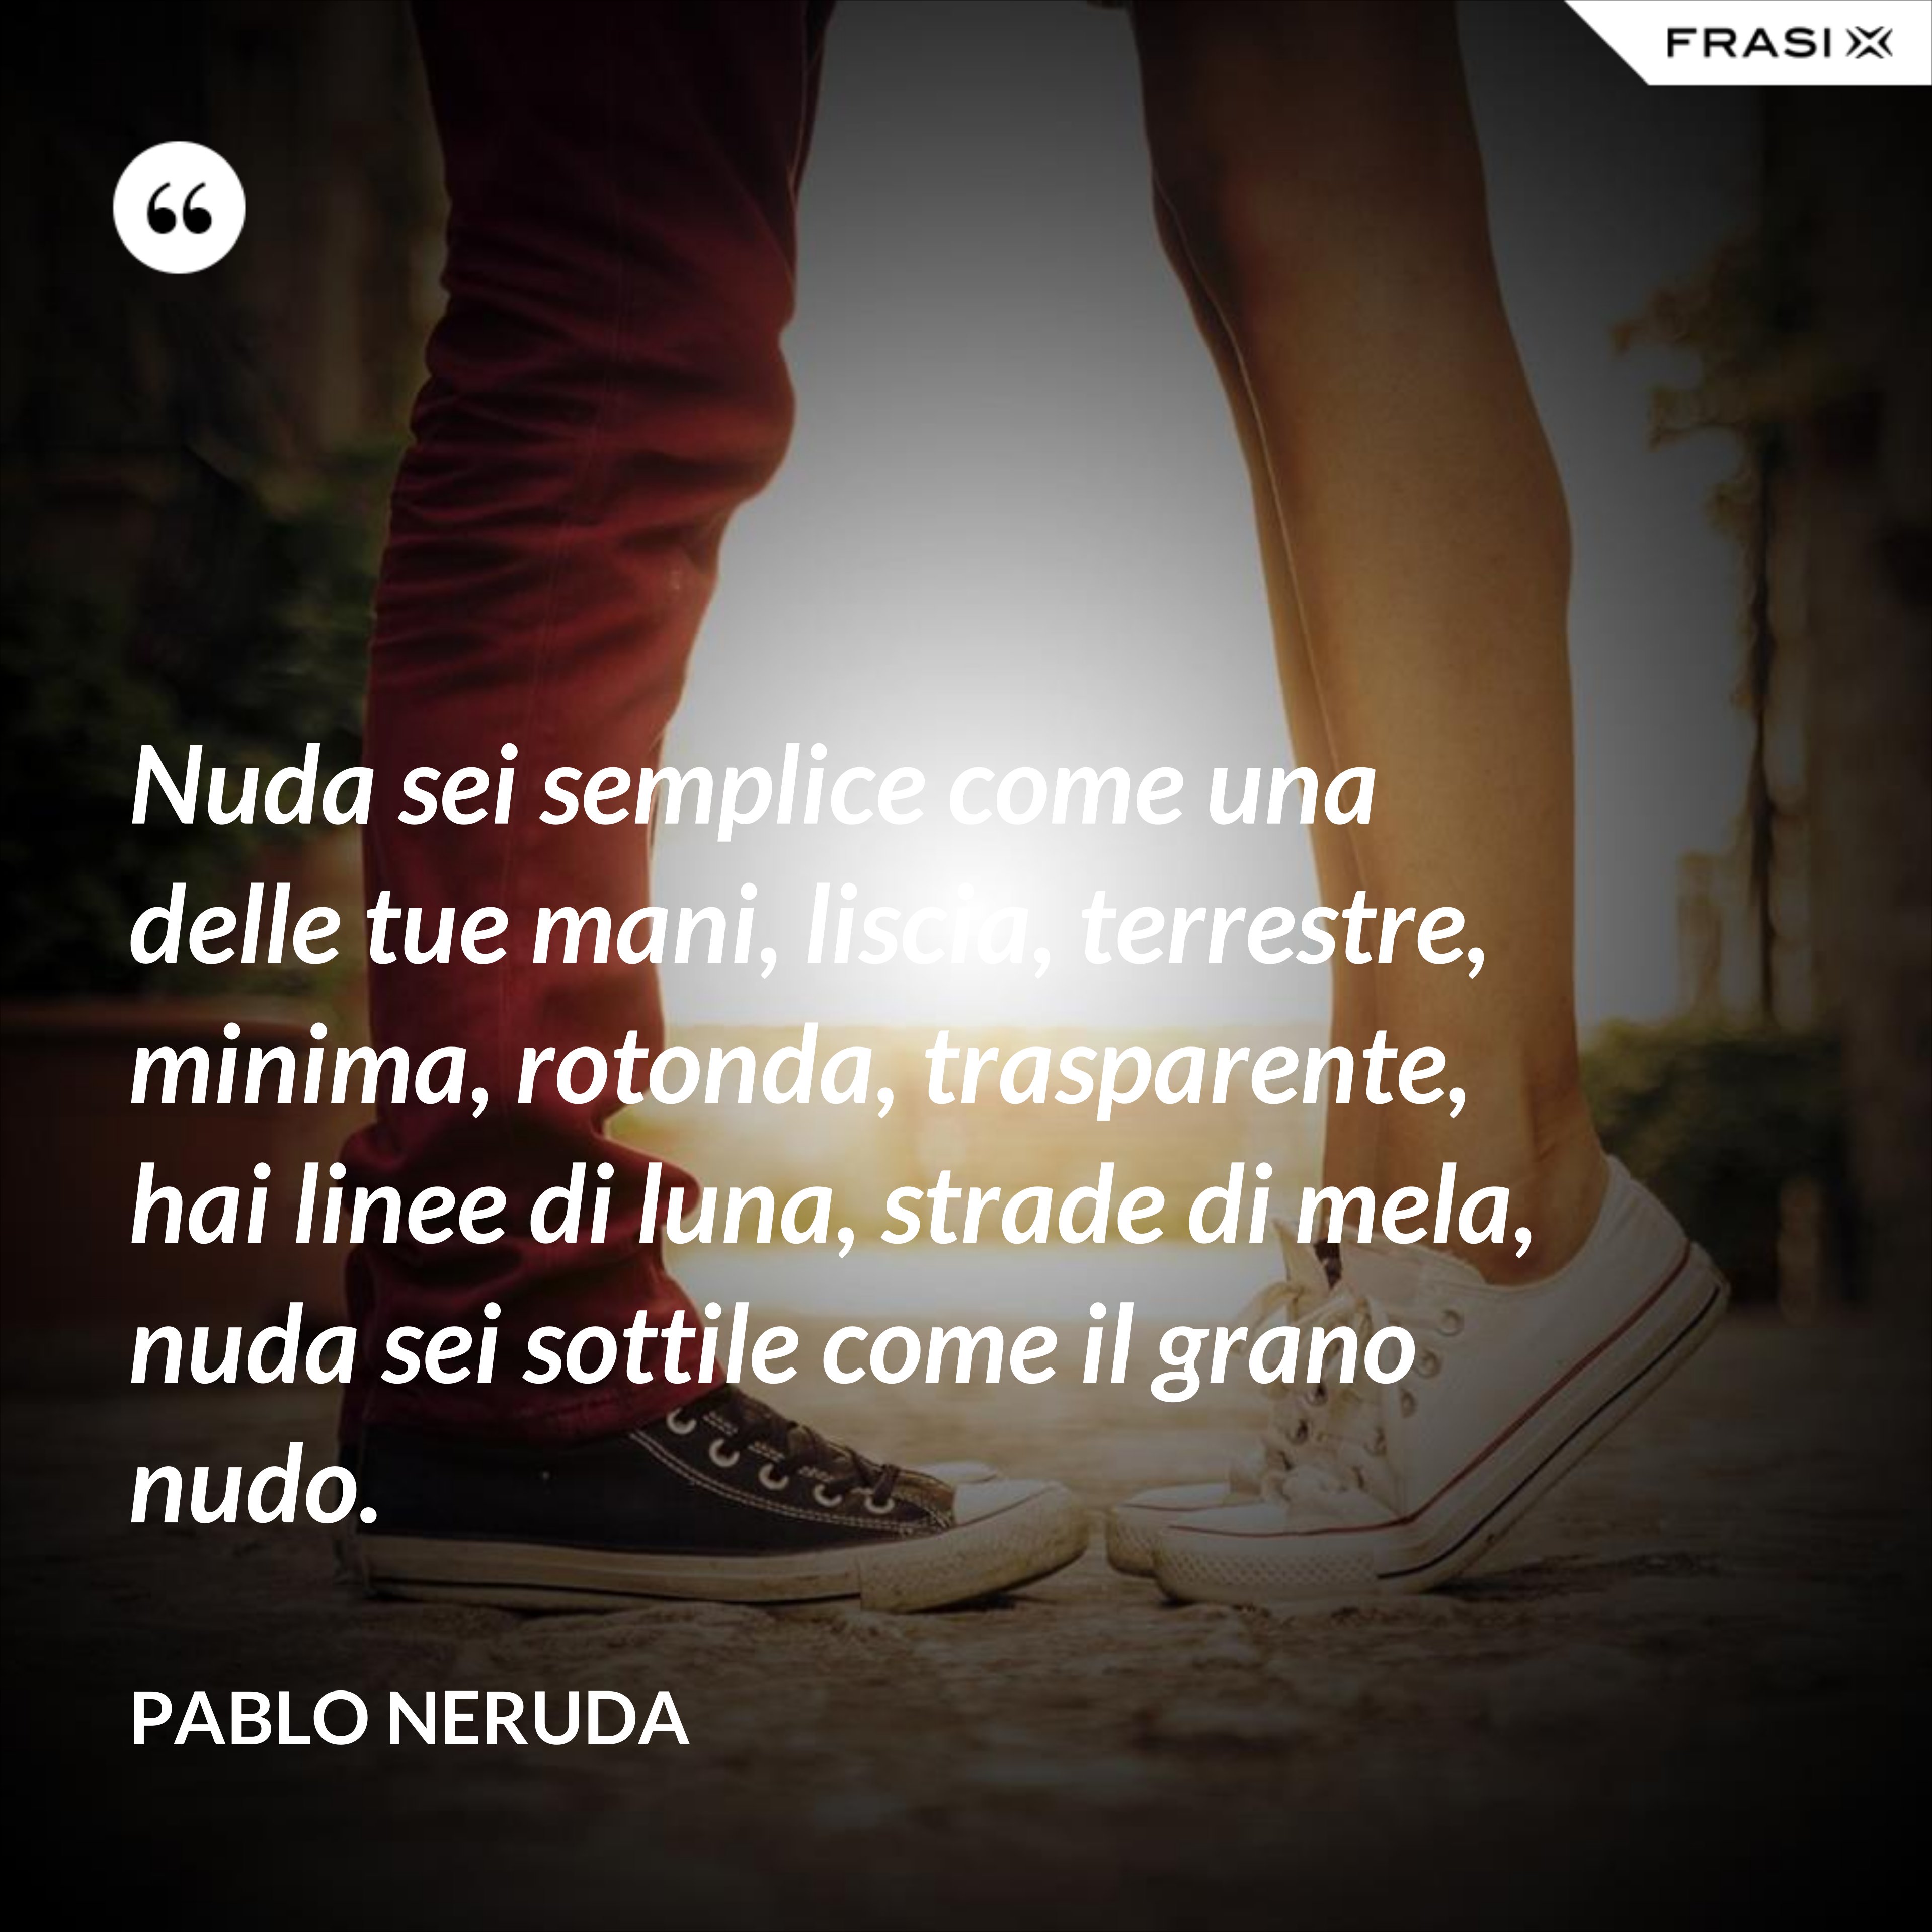 Nuda sei semplice come una delle tue mani, liscia, terrestre, minima, rotonda, trasparente, hai linee di luna, strade di mela, nuda sei sottile come il grano nudo. - Pablo Neruda